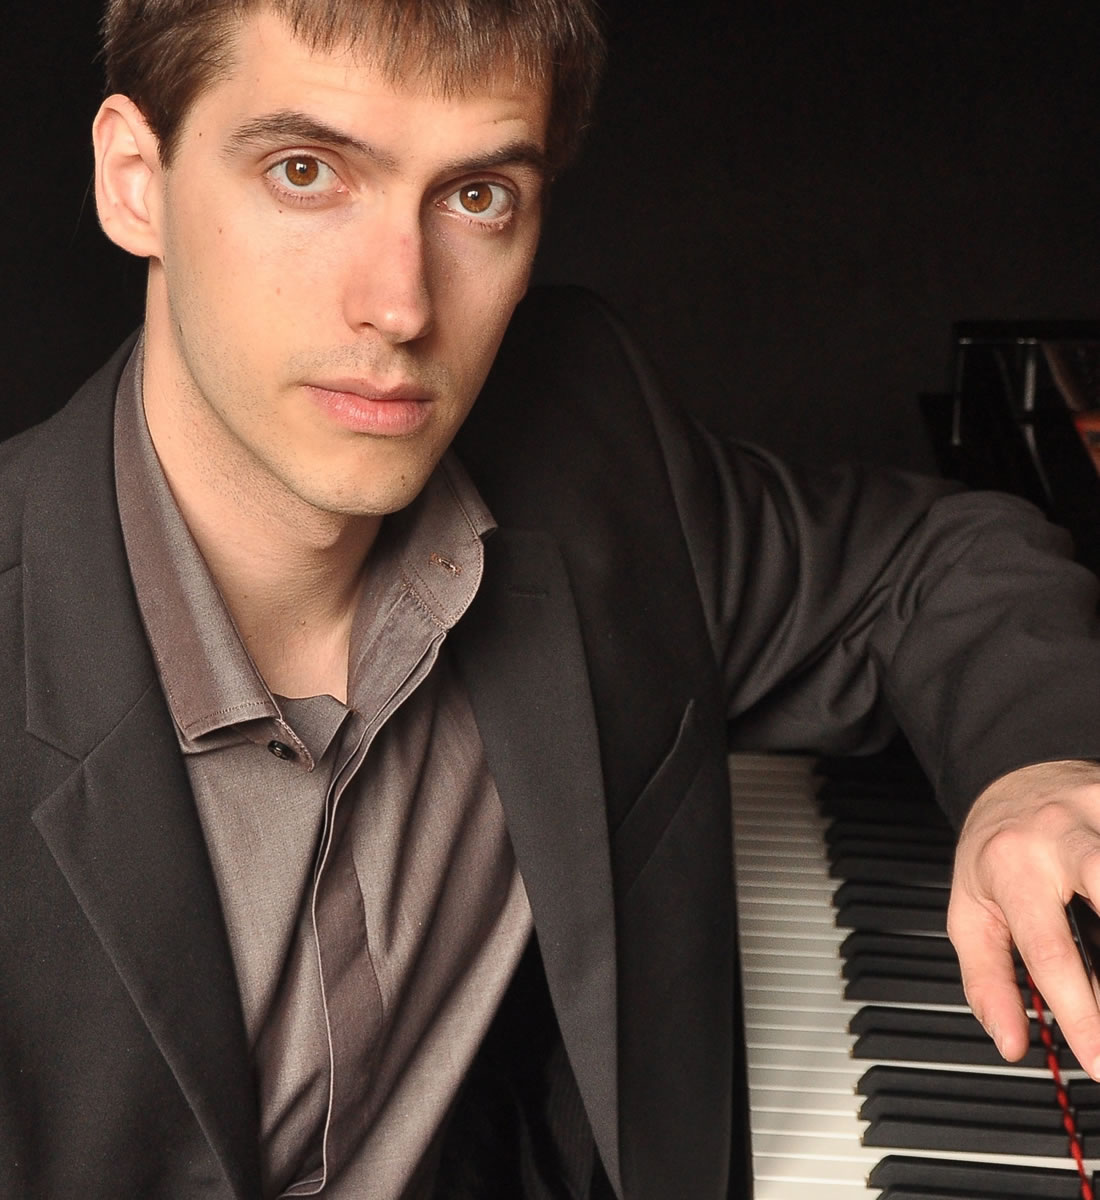 Pianist Isaac Friedhoff